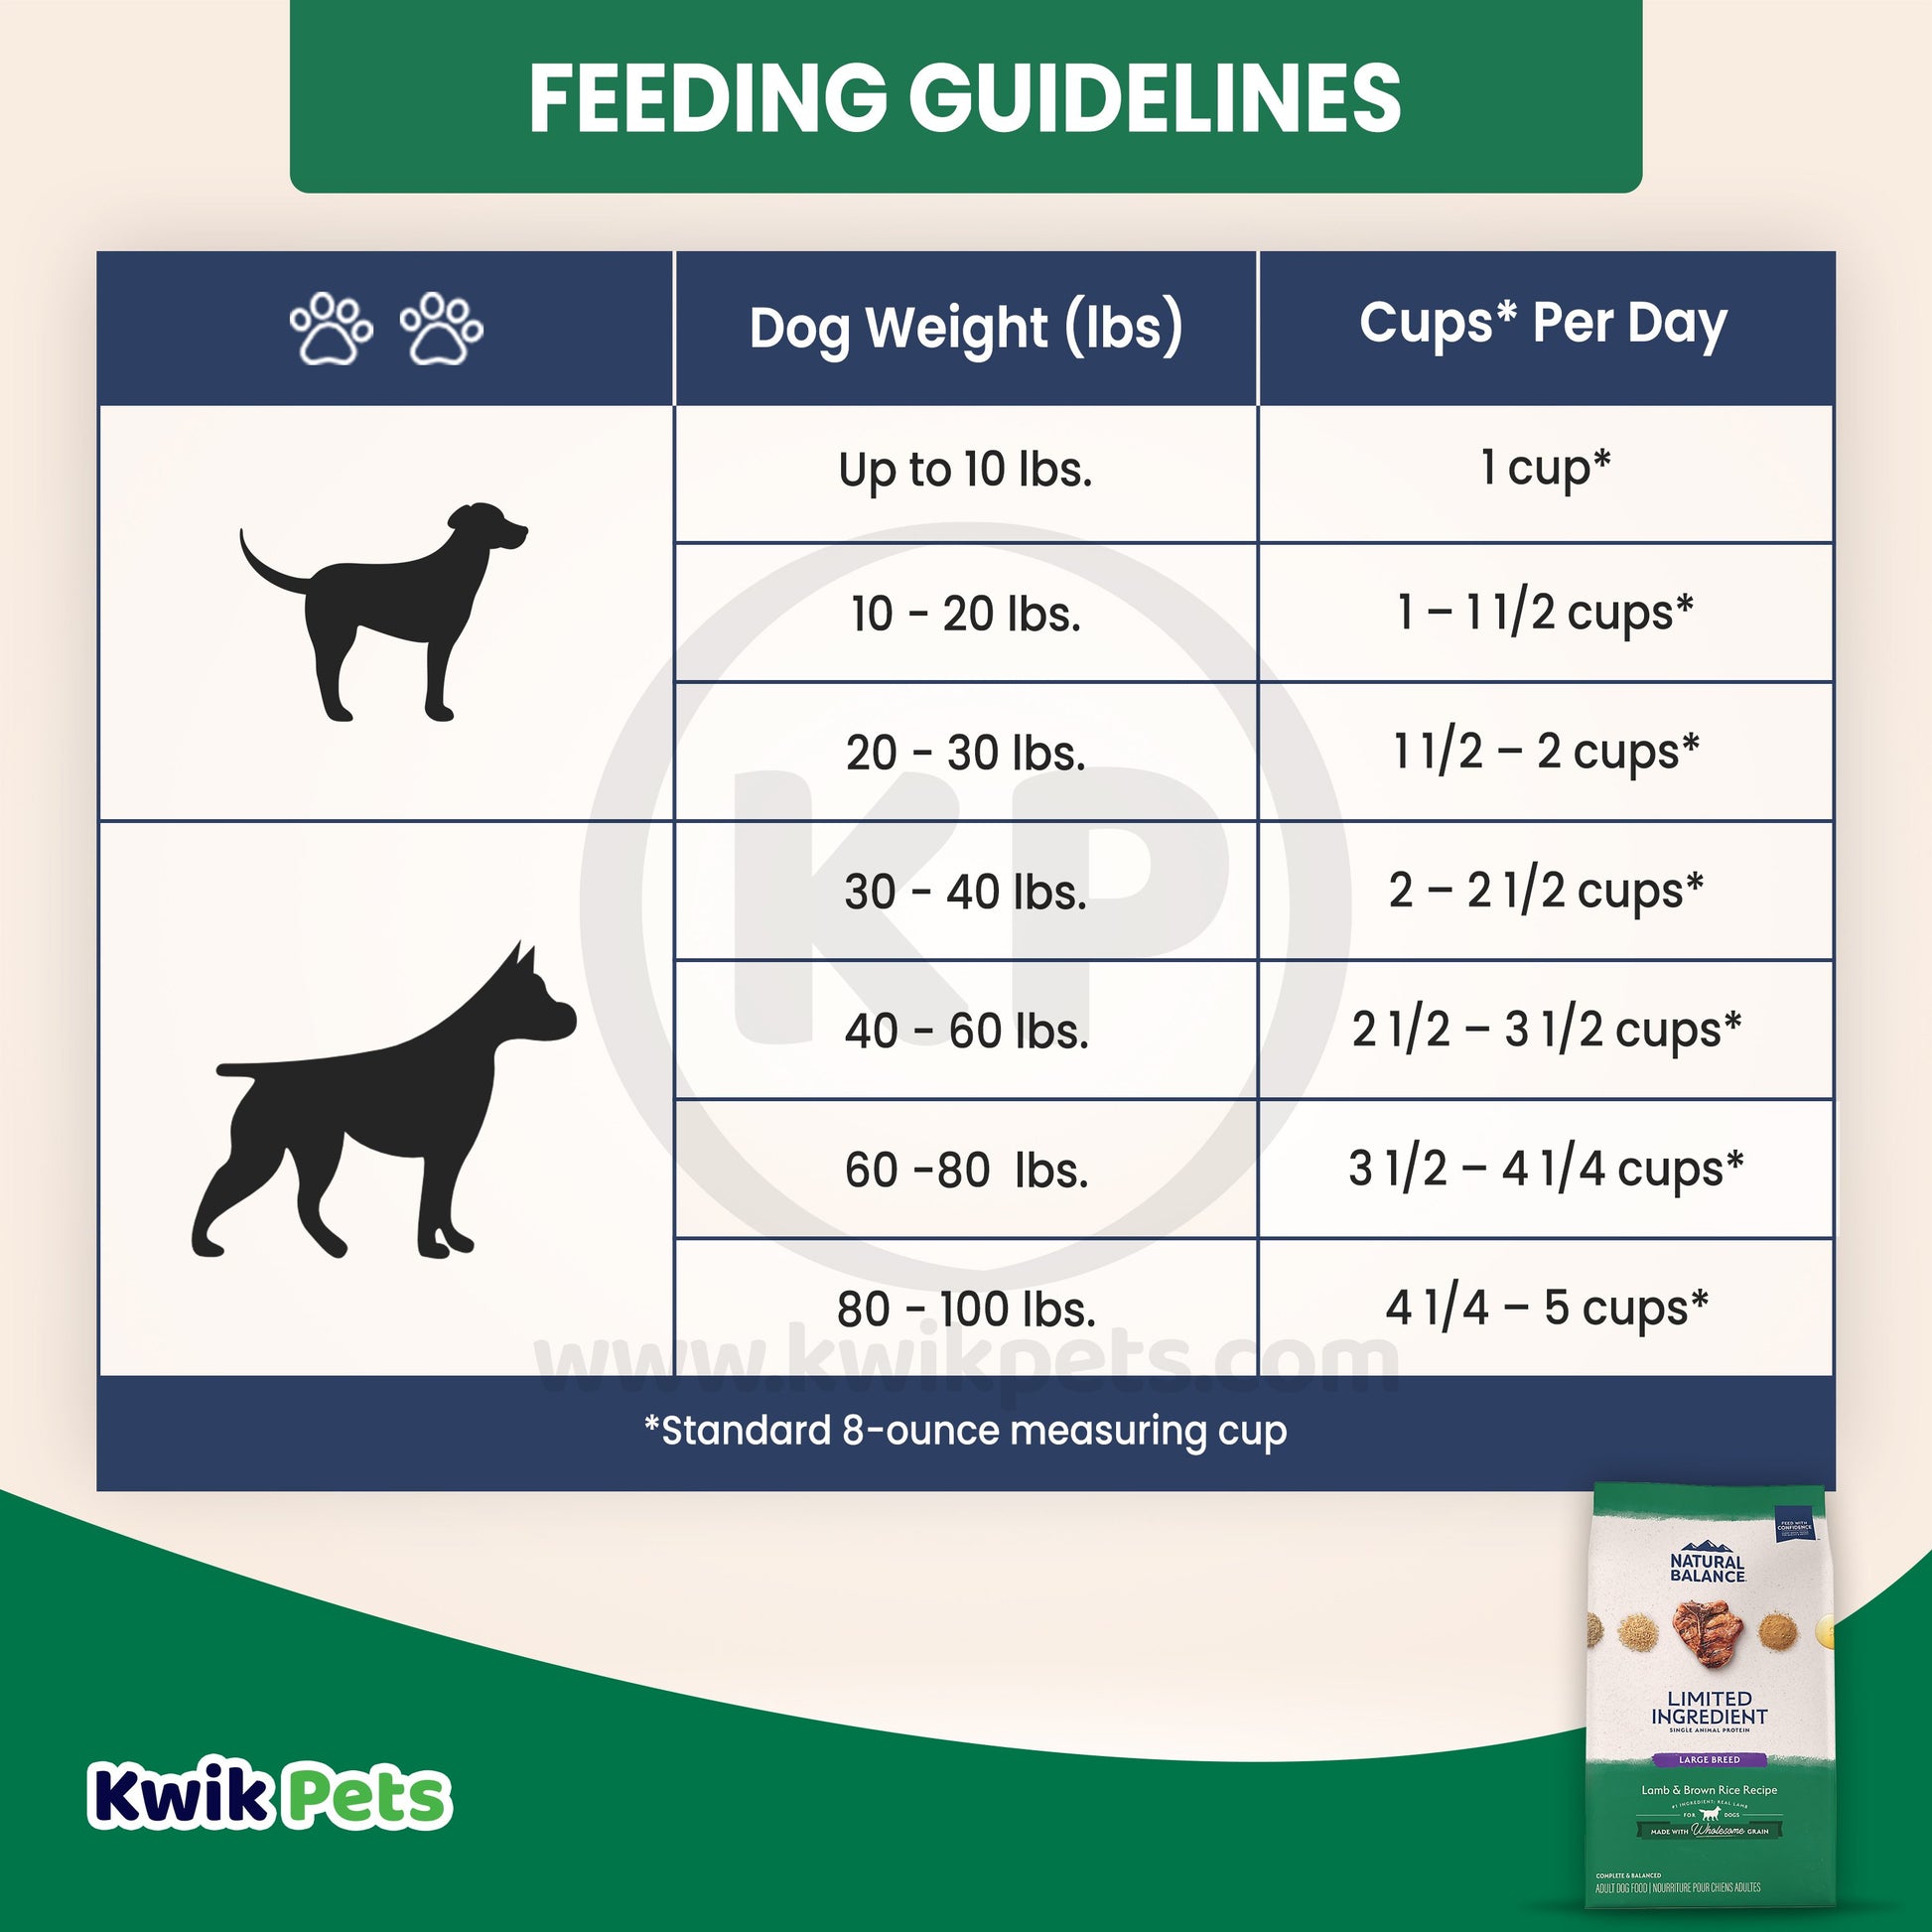 Natural Balance Pet Foods L.I.D. Adult Dry Dog Food Lamb & Brown Rice 26 lb, Natural Balance